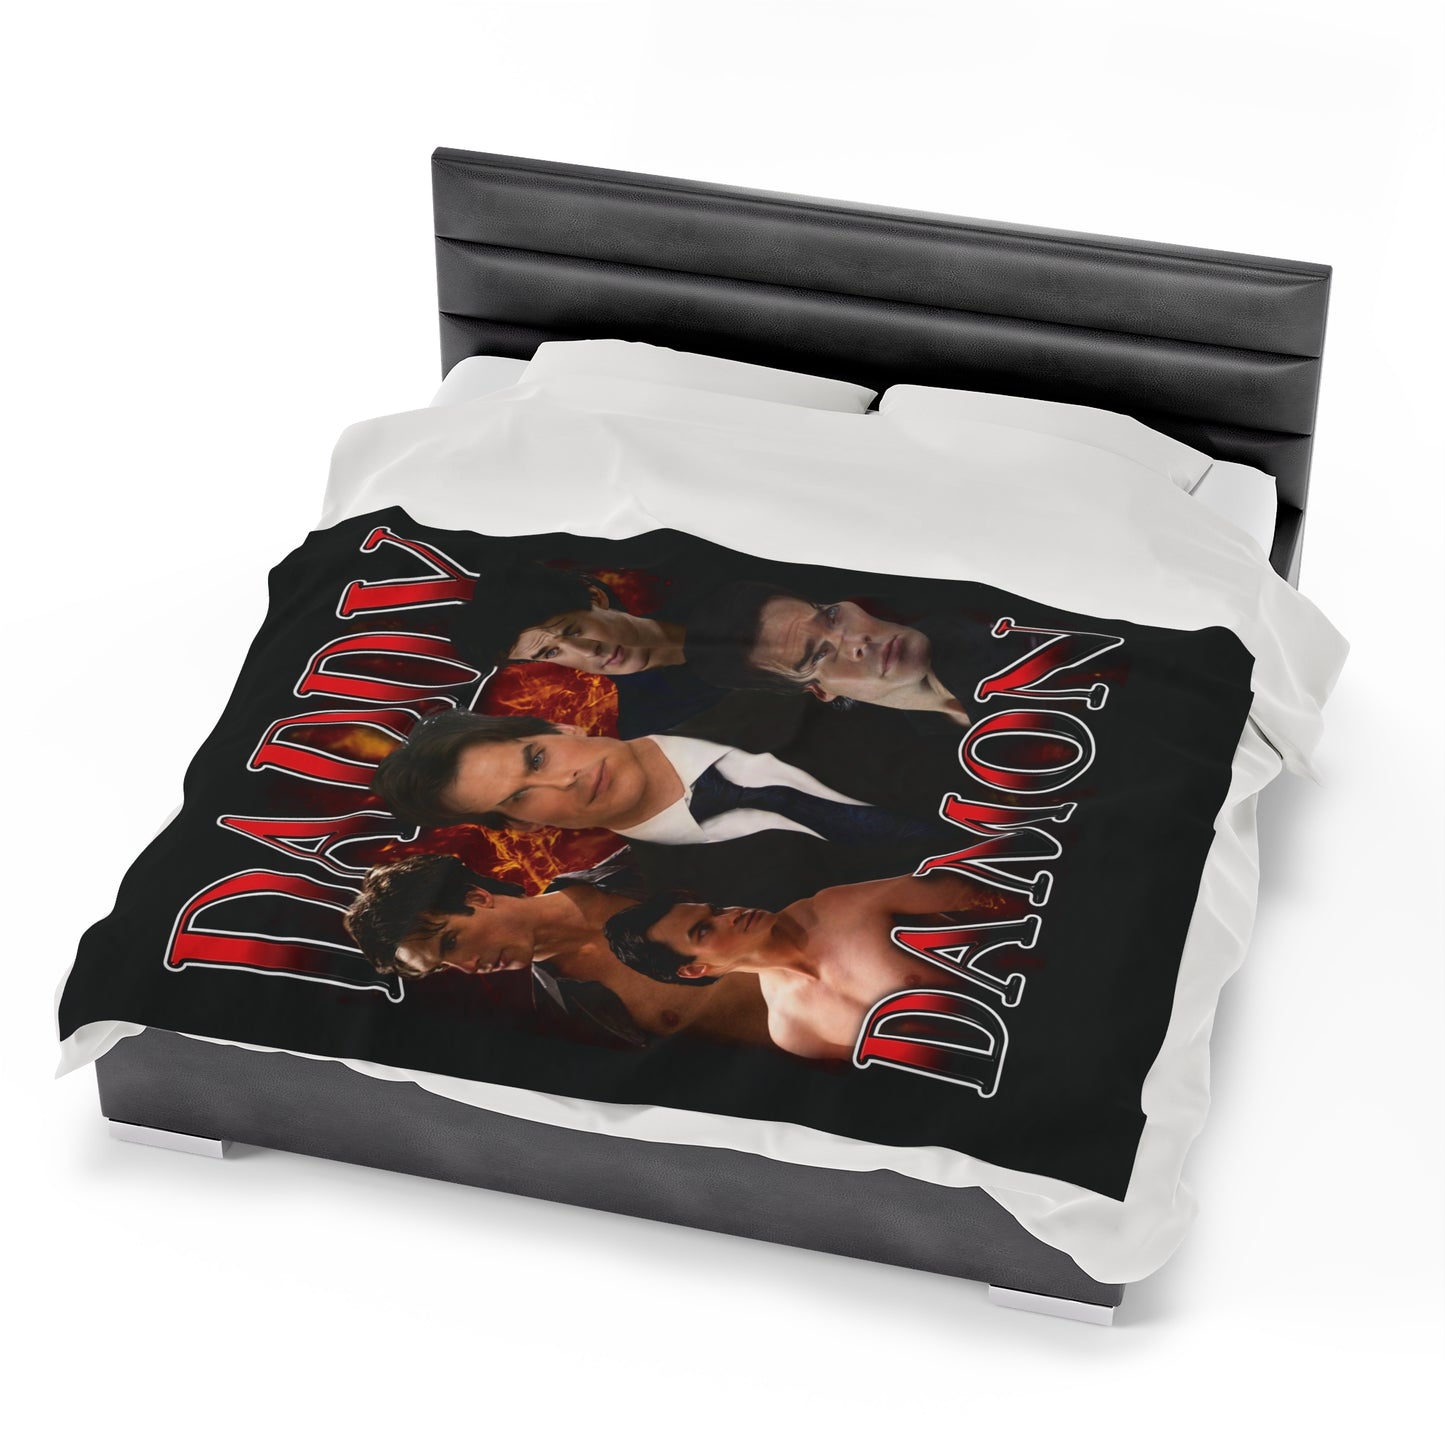 Daddy Damon Blanket